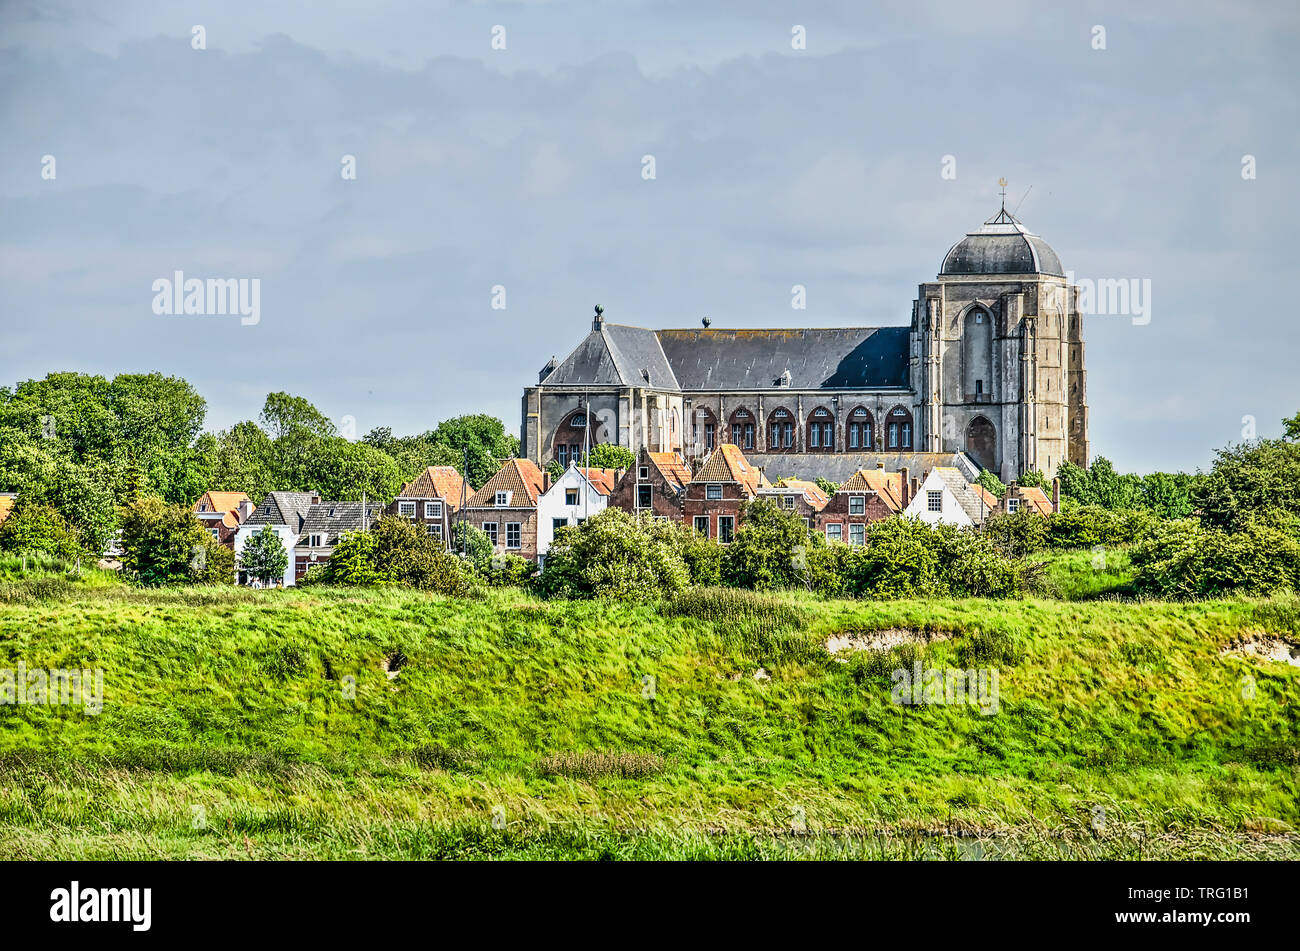 Vaste église gothique du 15e siècle dominant les maisons de la ville de Veere, aux Pays-Bas, en vue de les remparts Banque D'Images